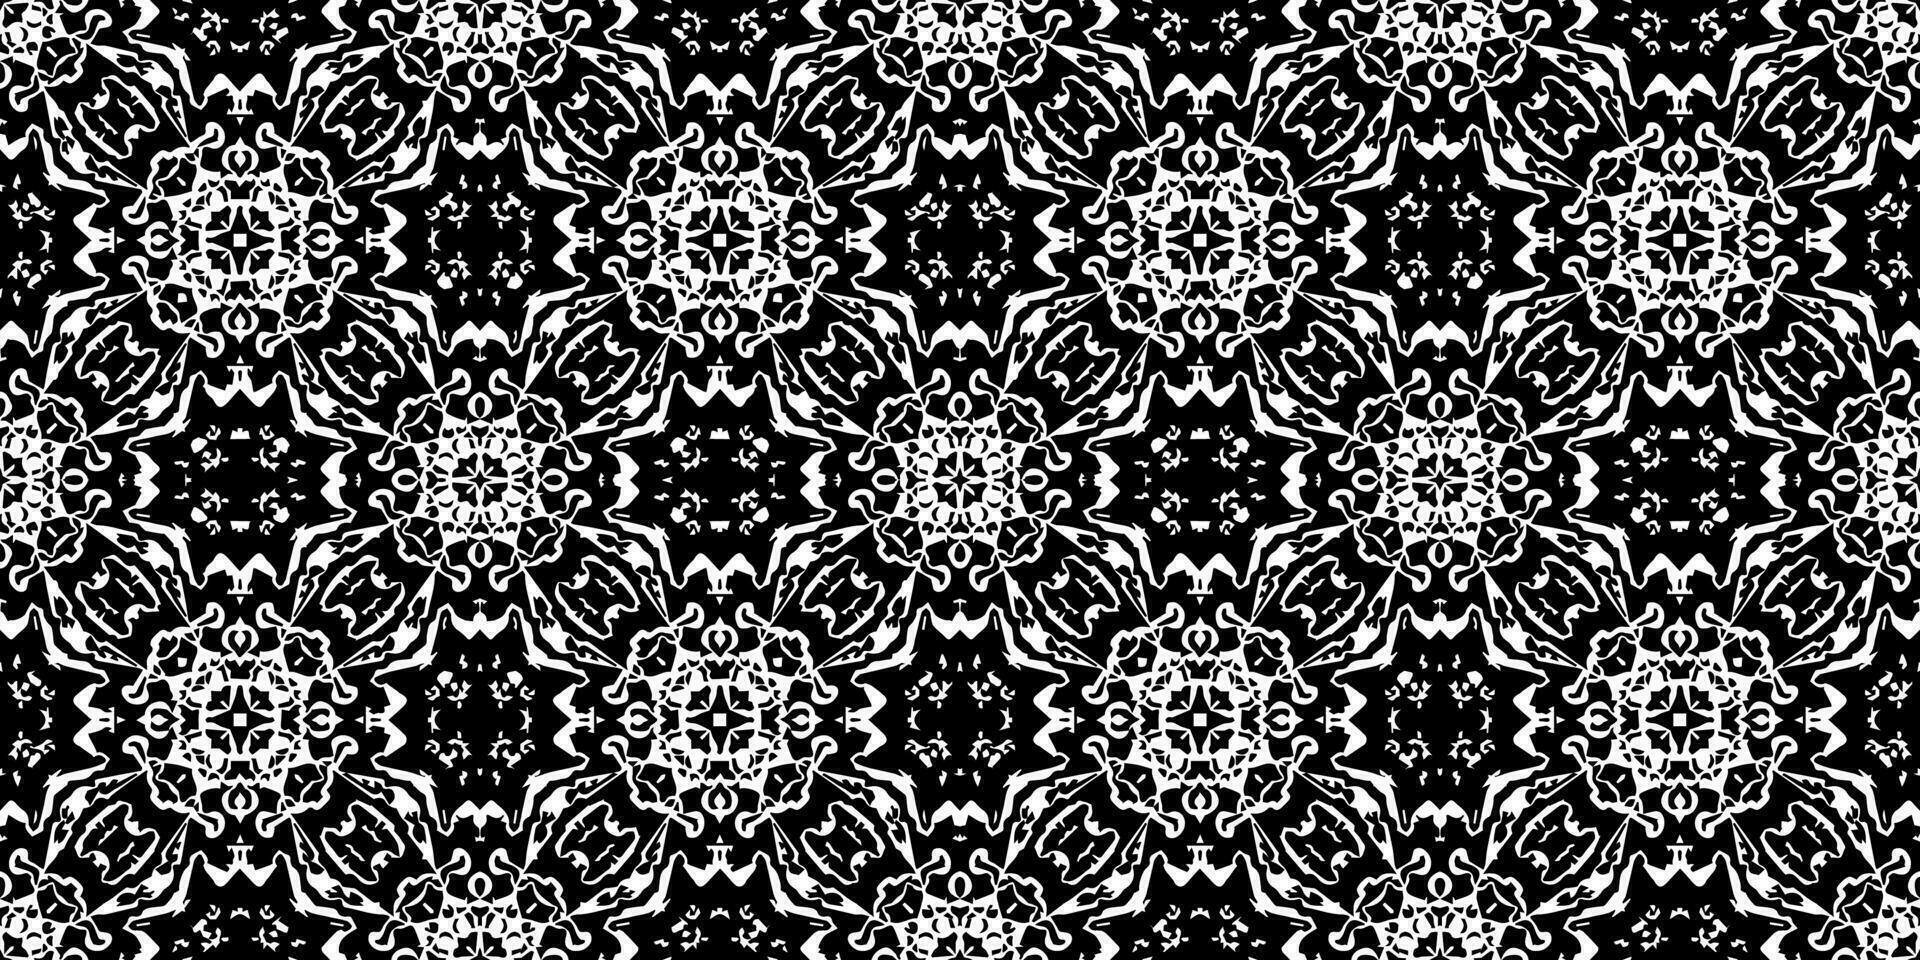 nahtlos Batik Muster, geometrisch Stammes- Muster, es ähnelt ethnisch Boho, aztekisch Stil, ikat Stil.Luxus dekorativ Stoff Muster zum berühmt banner.gestaltet zum verwenden Stoff, Vorhang, Teppich, Batik vektor